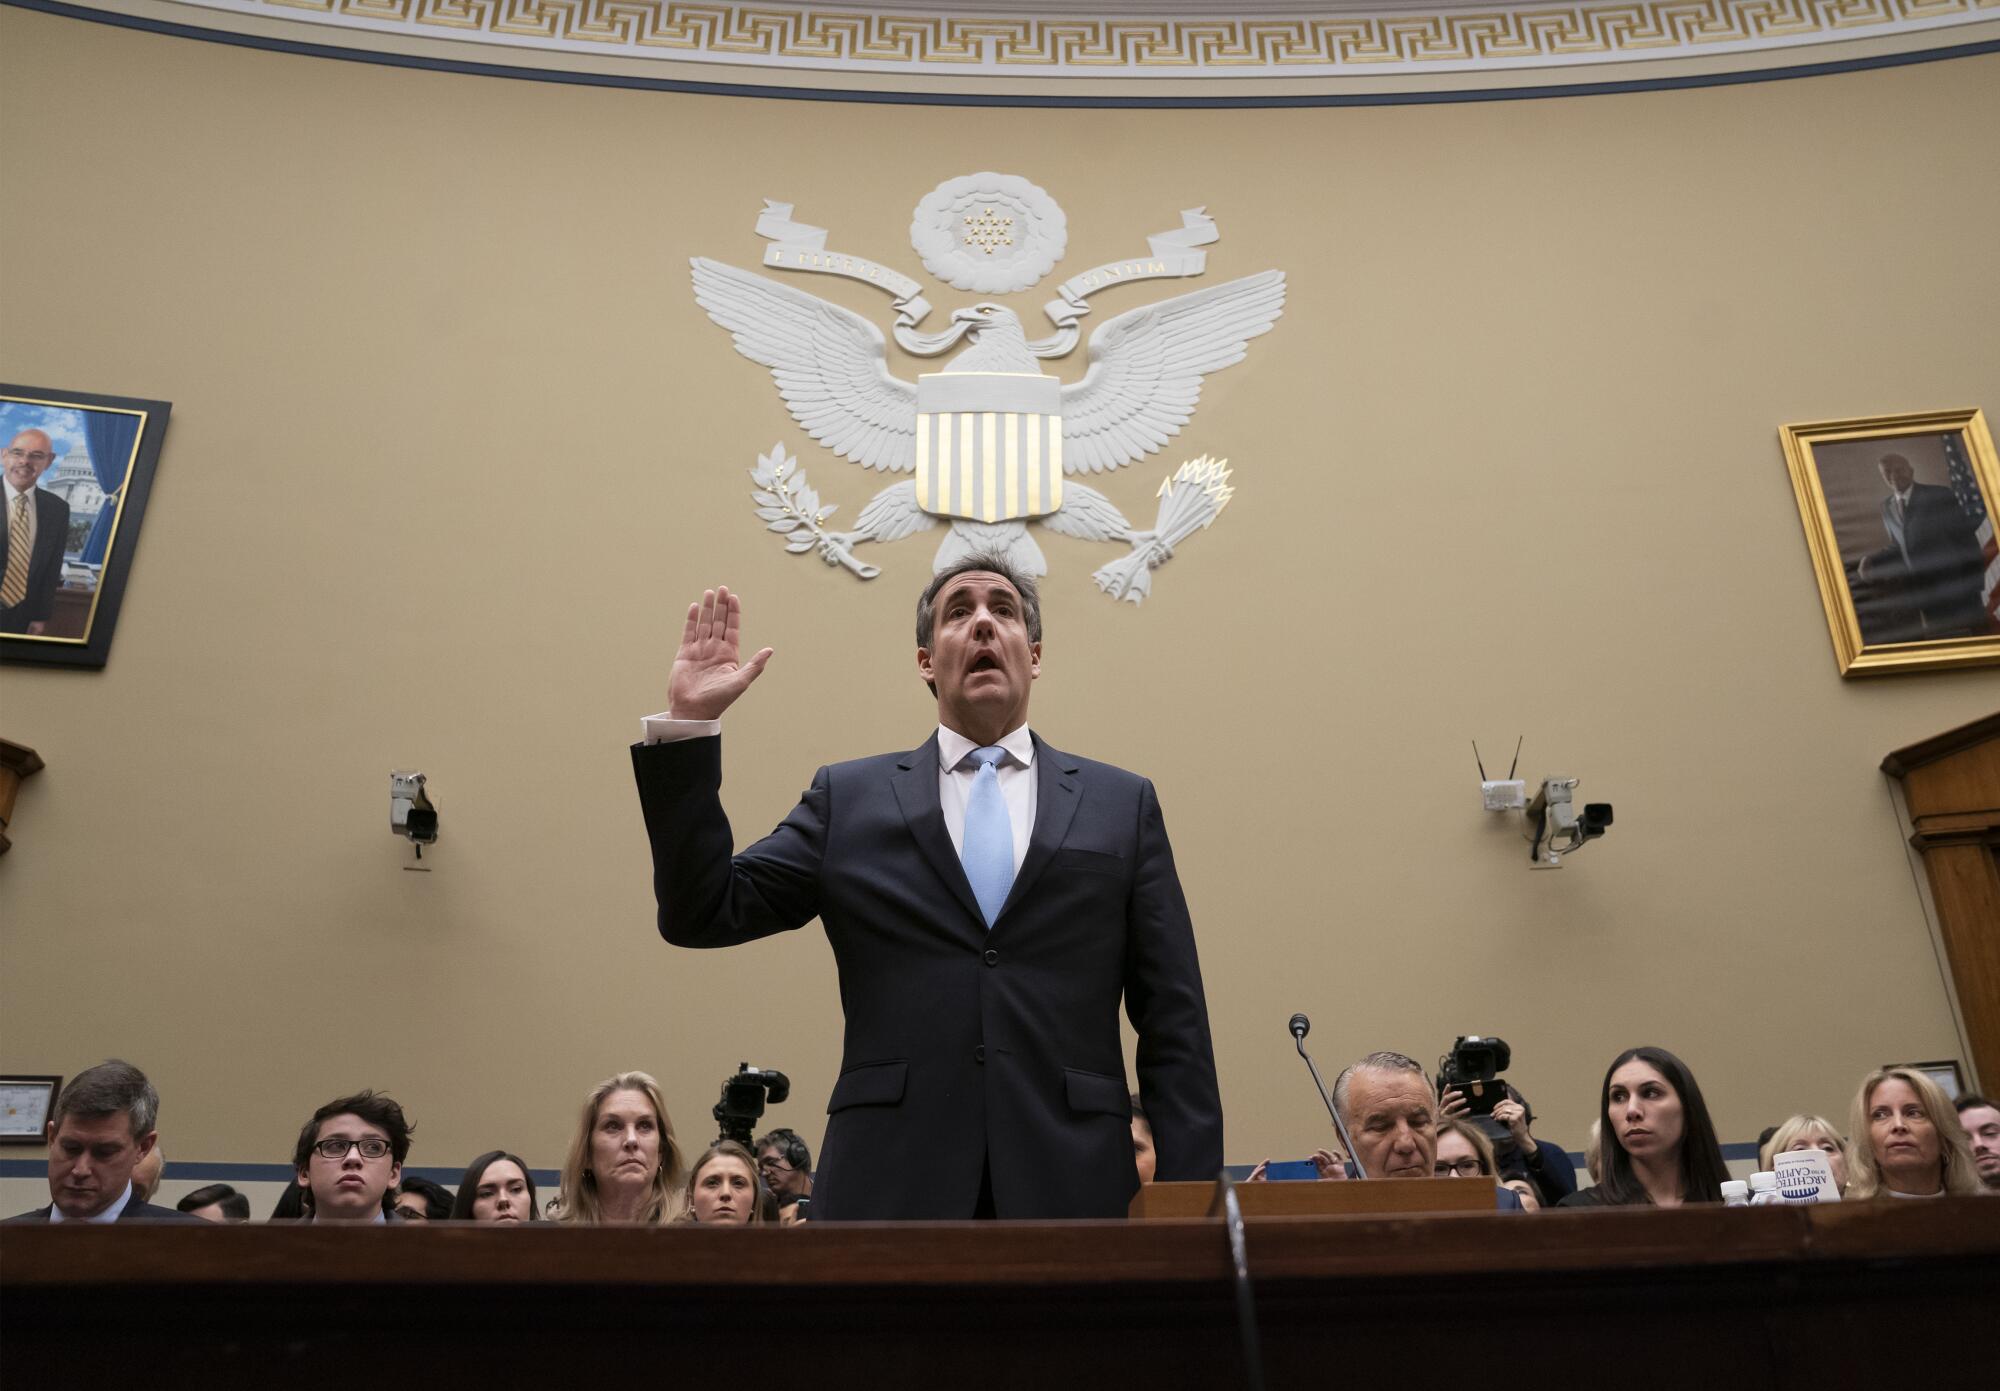 گروه نشسته اند و مایکل کوهن در حالی که دست راستش را برای ادای سوگند بالا آورده است، زیر تصویر عقاب روی مهر مجلس نمایندگان ایستاده است.